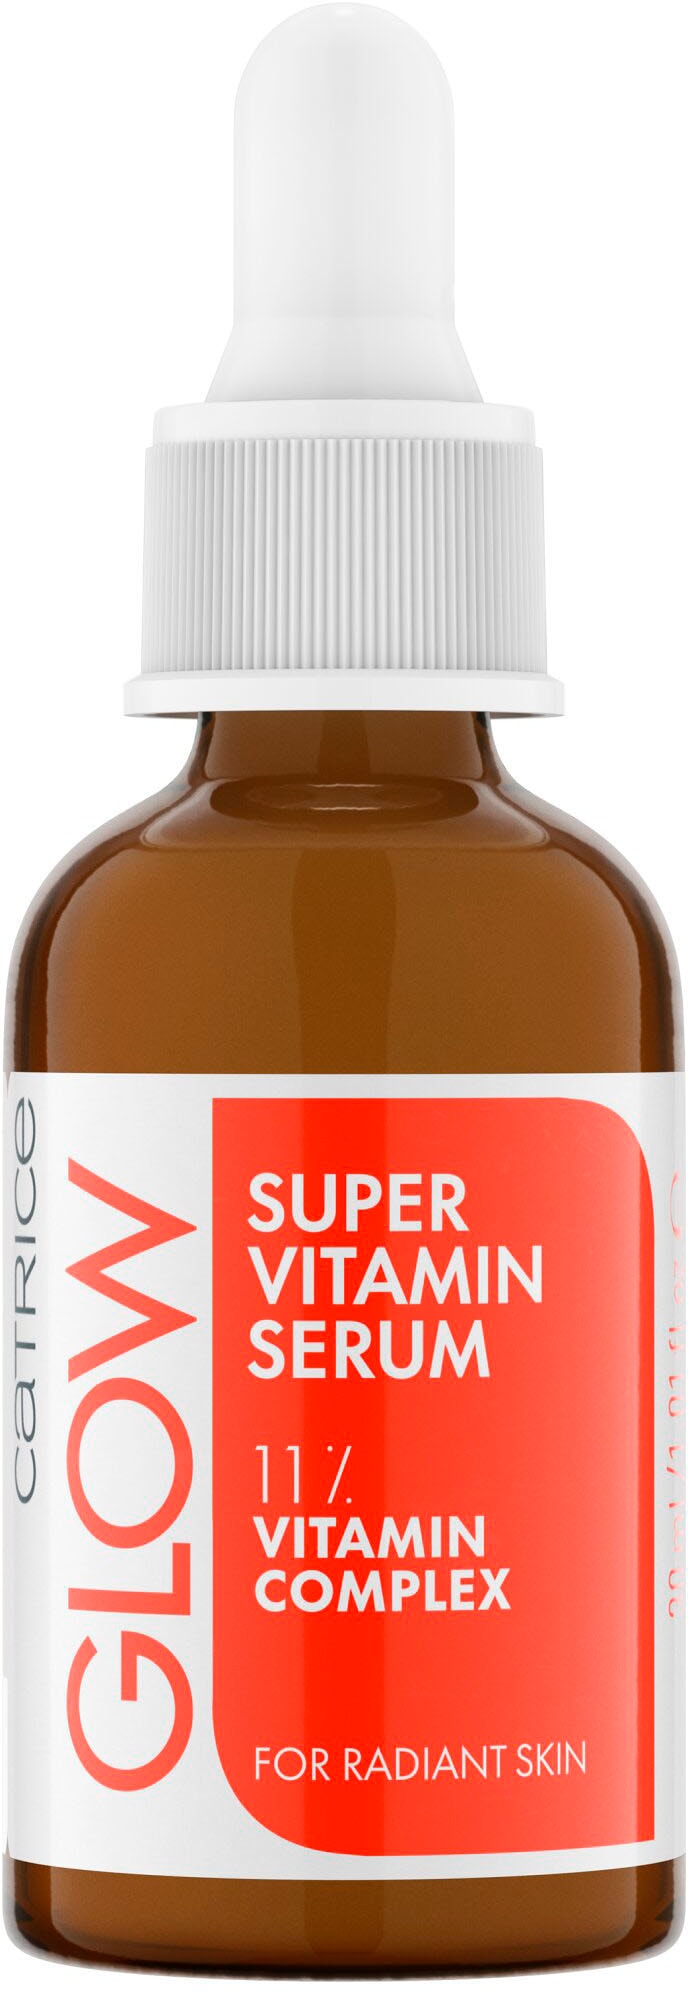 Catrice Gesichtsserum »Glow Super Vitamin Serum« bei online OTTO